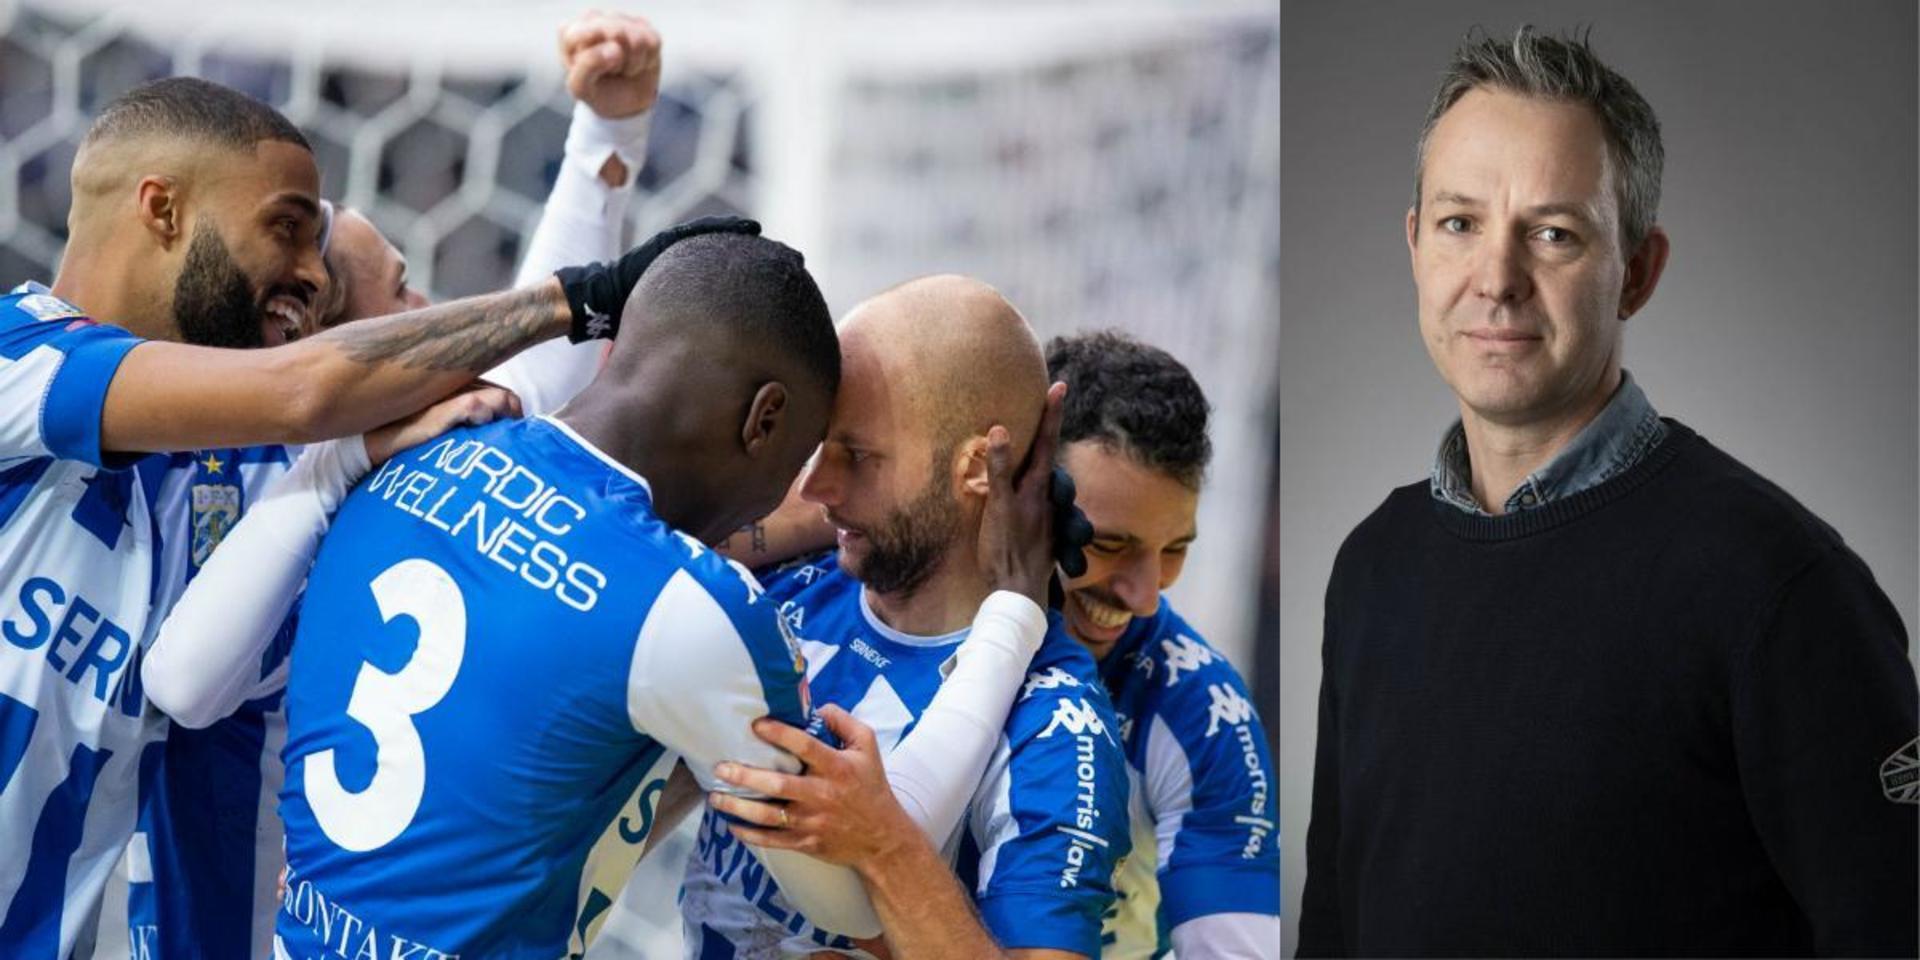 Robin Söder har saknats under 2020, menar GP:s fotbollskrönikör. Nu är han tillbaka – och är på sätt och vis årets bästa IFK-nyhet. 